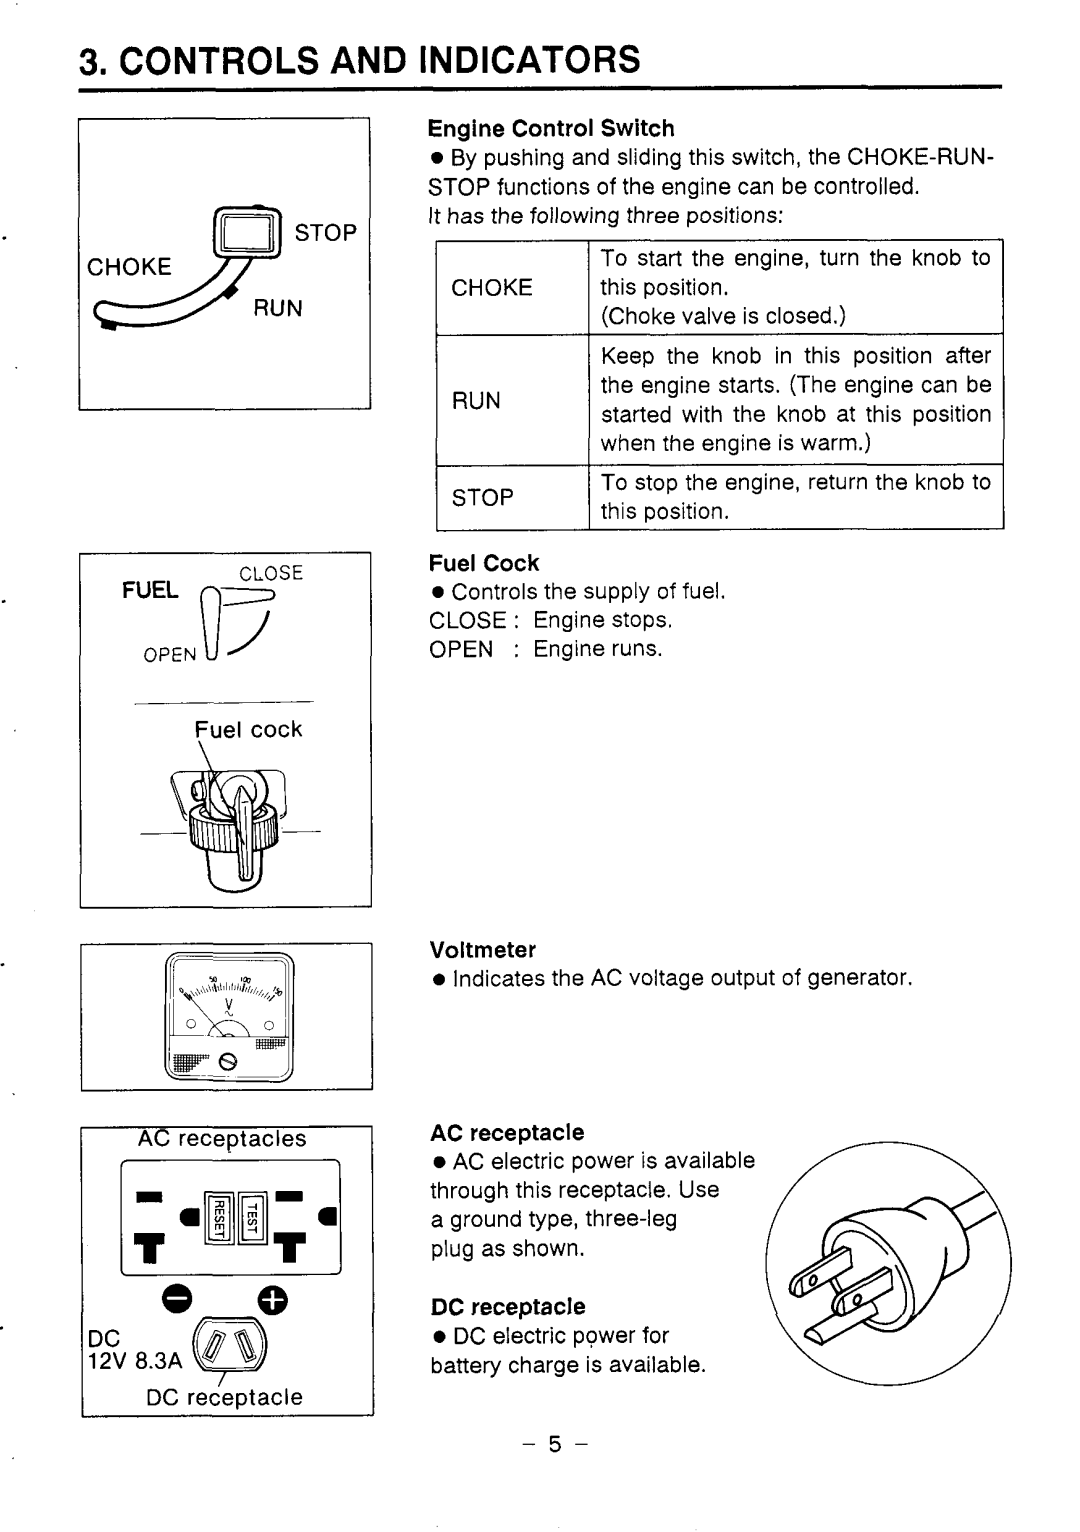 Makita G1200R instruction manual Controls And Indicators, 7 ” 8.3A, Fuel Cock, Voltmeter, DC receptacle 